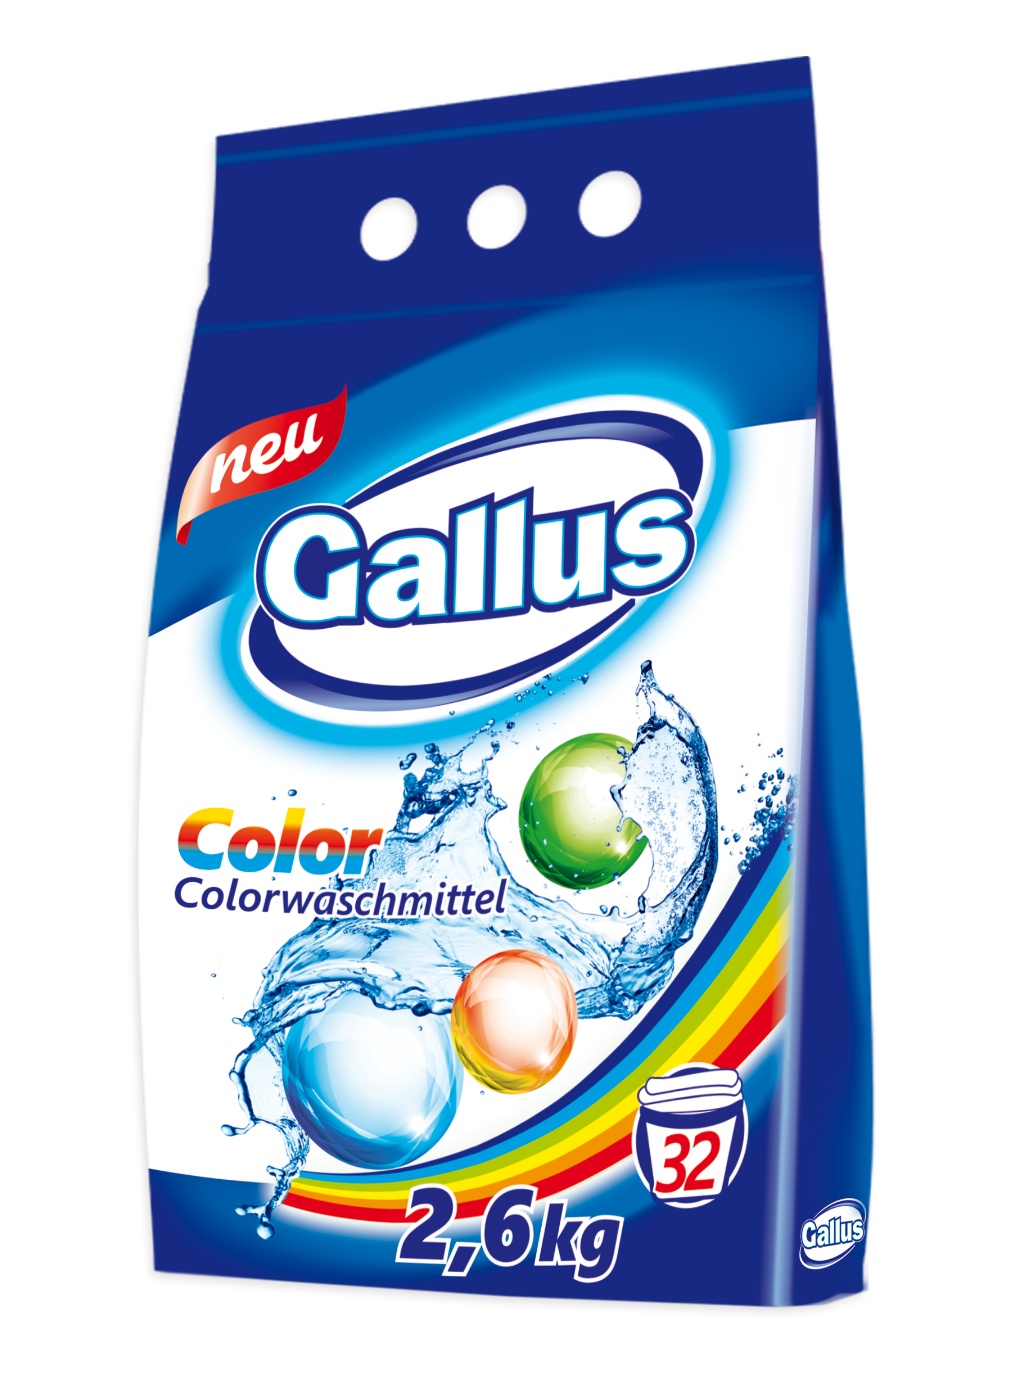  порошок Gallus, для цветного белья, 2,6 кг -  с .